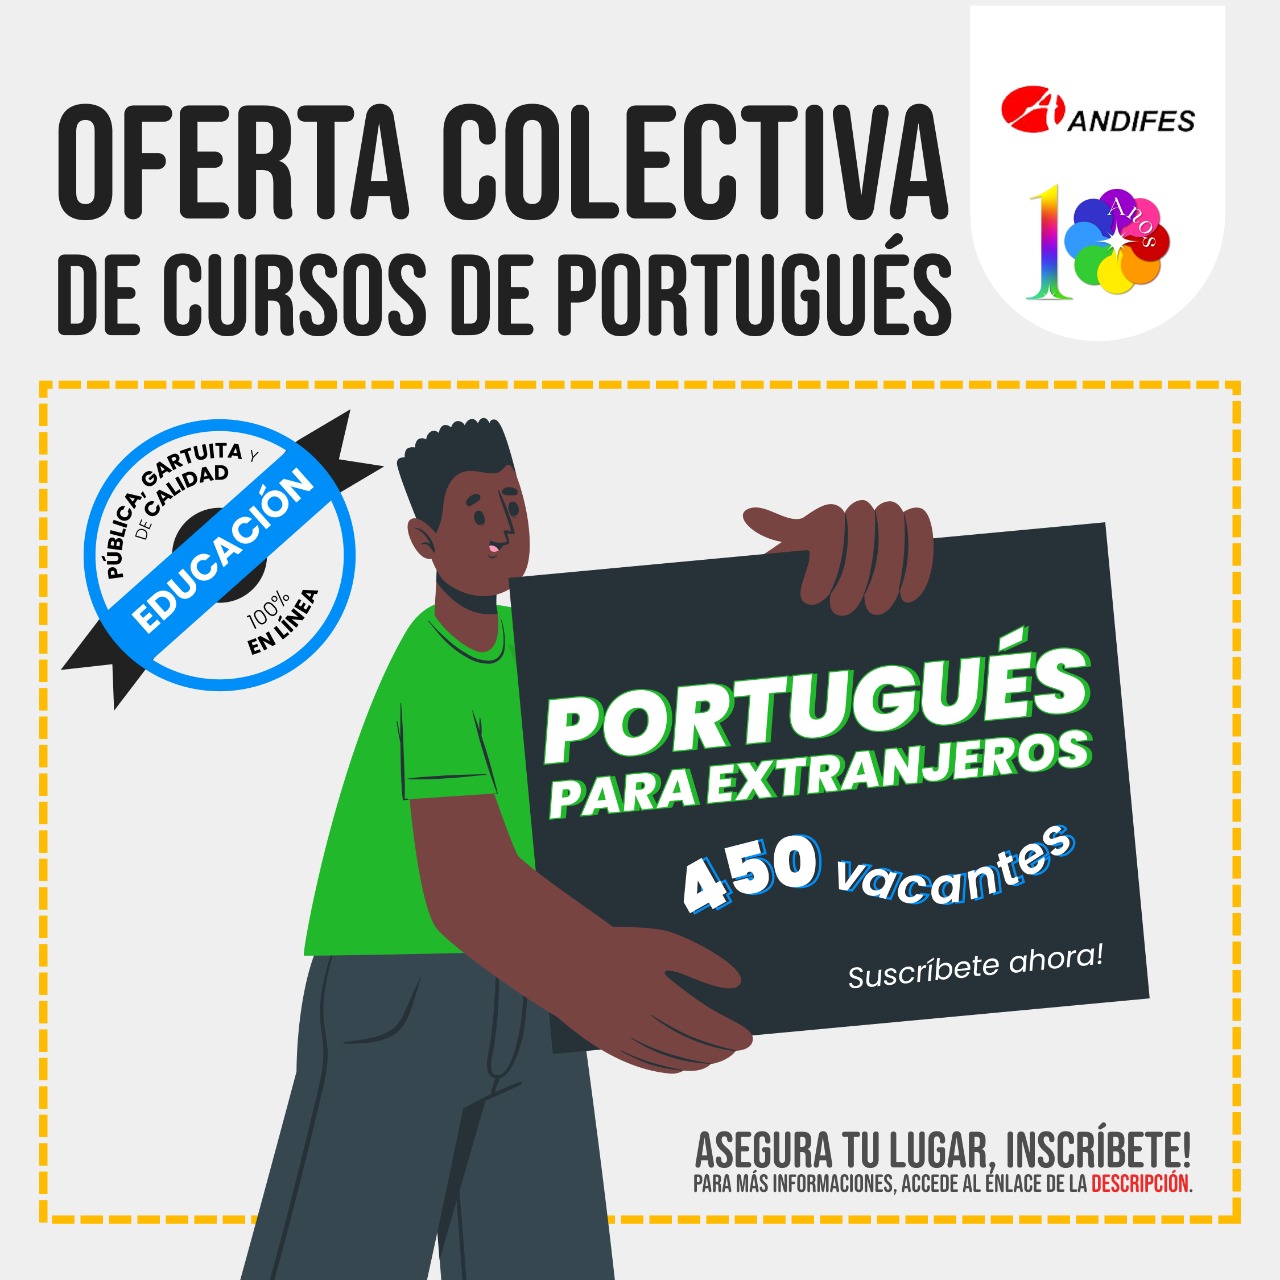 OFERTA COLETIVA GRATUITA DE CURSOS DE PORTUGUÊS PARA ESTRANGEIROS